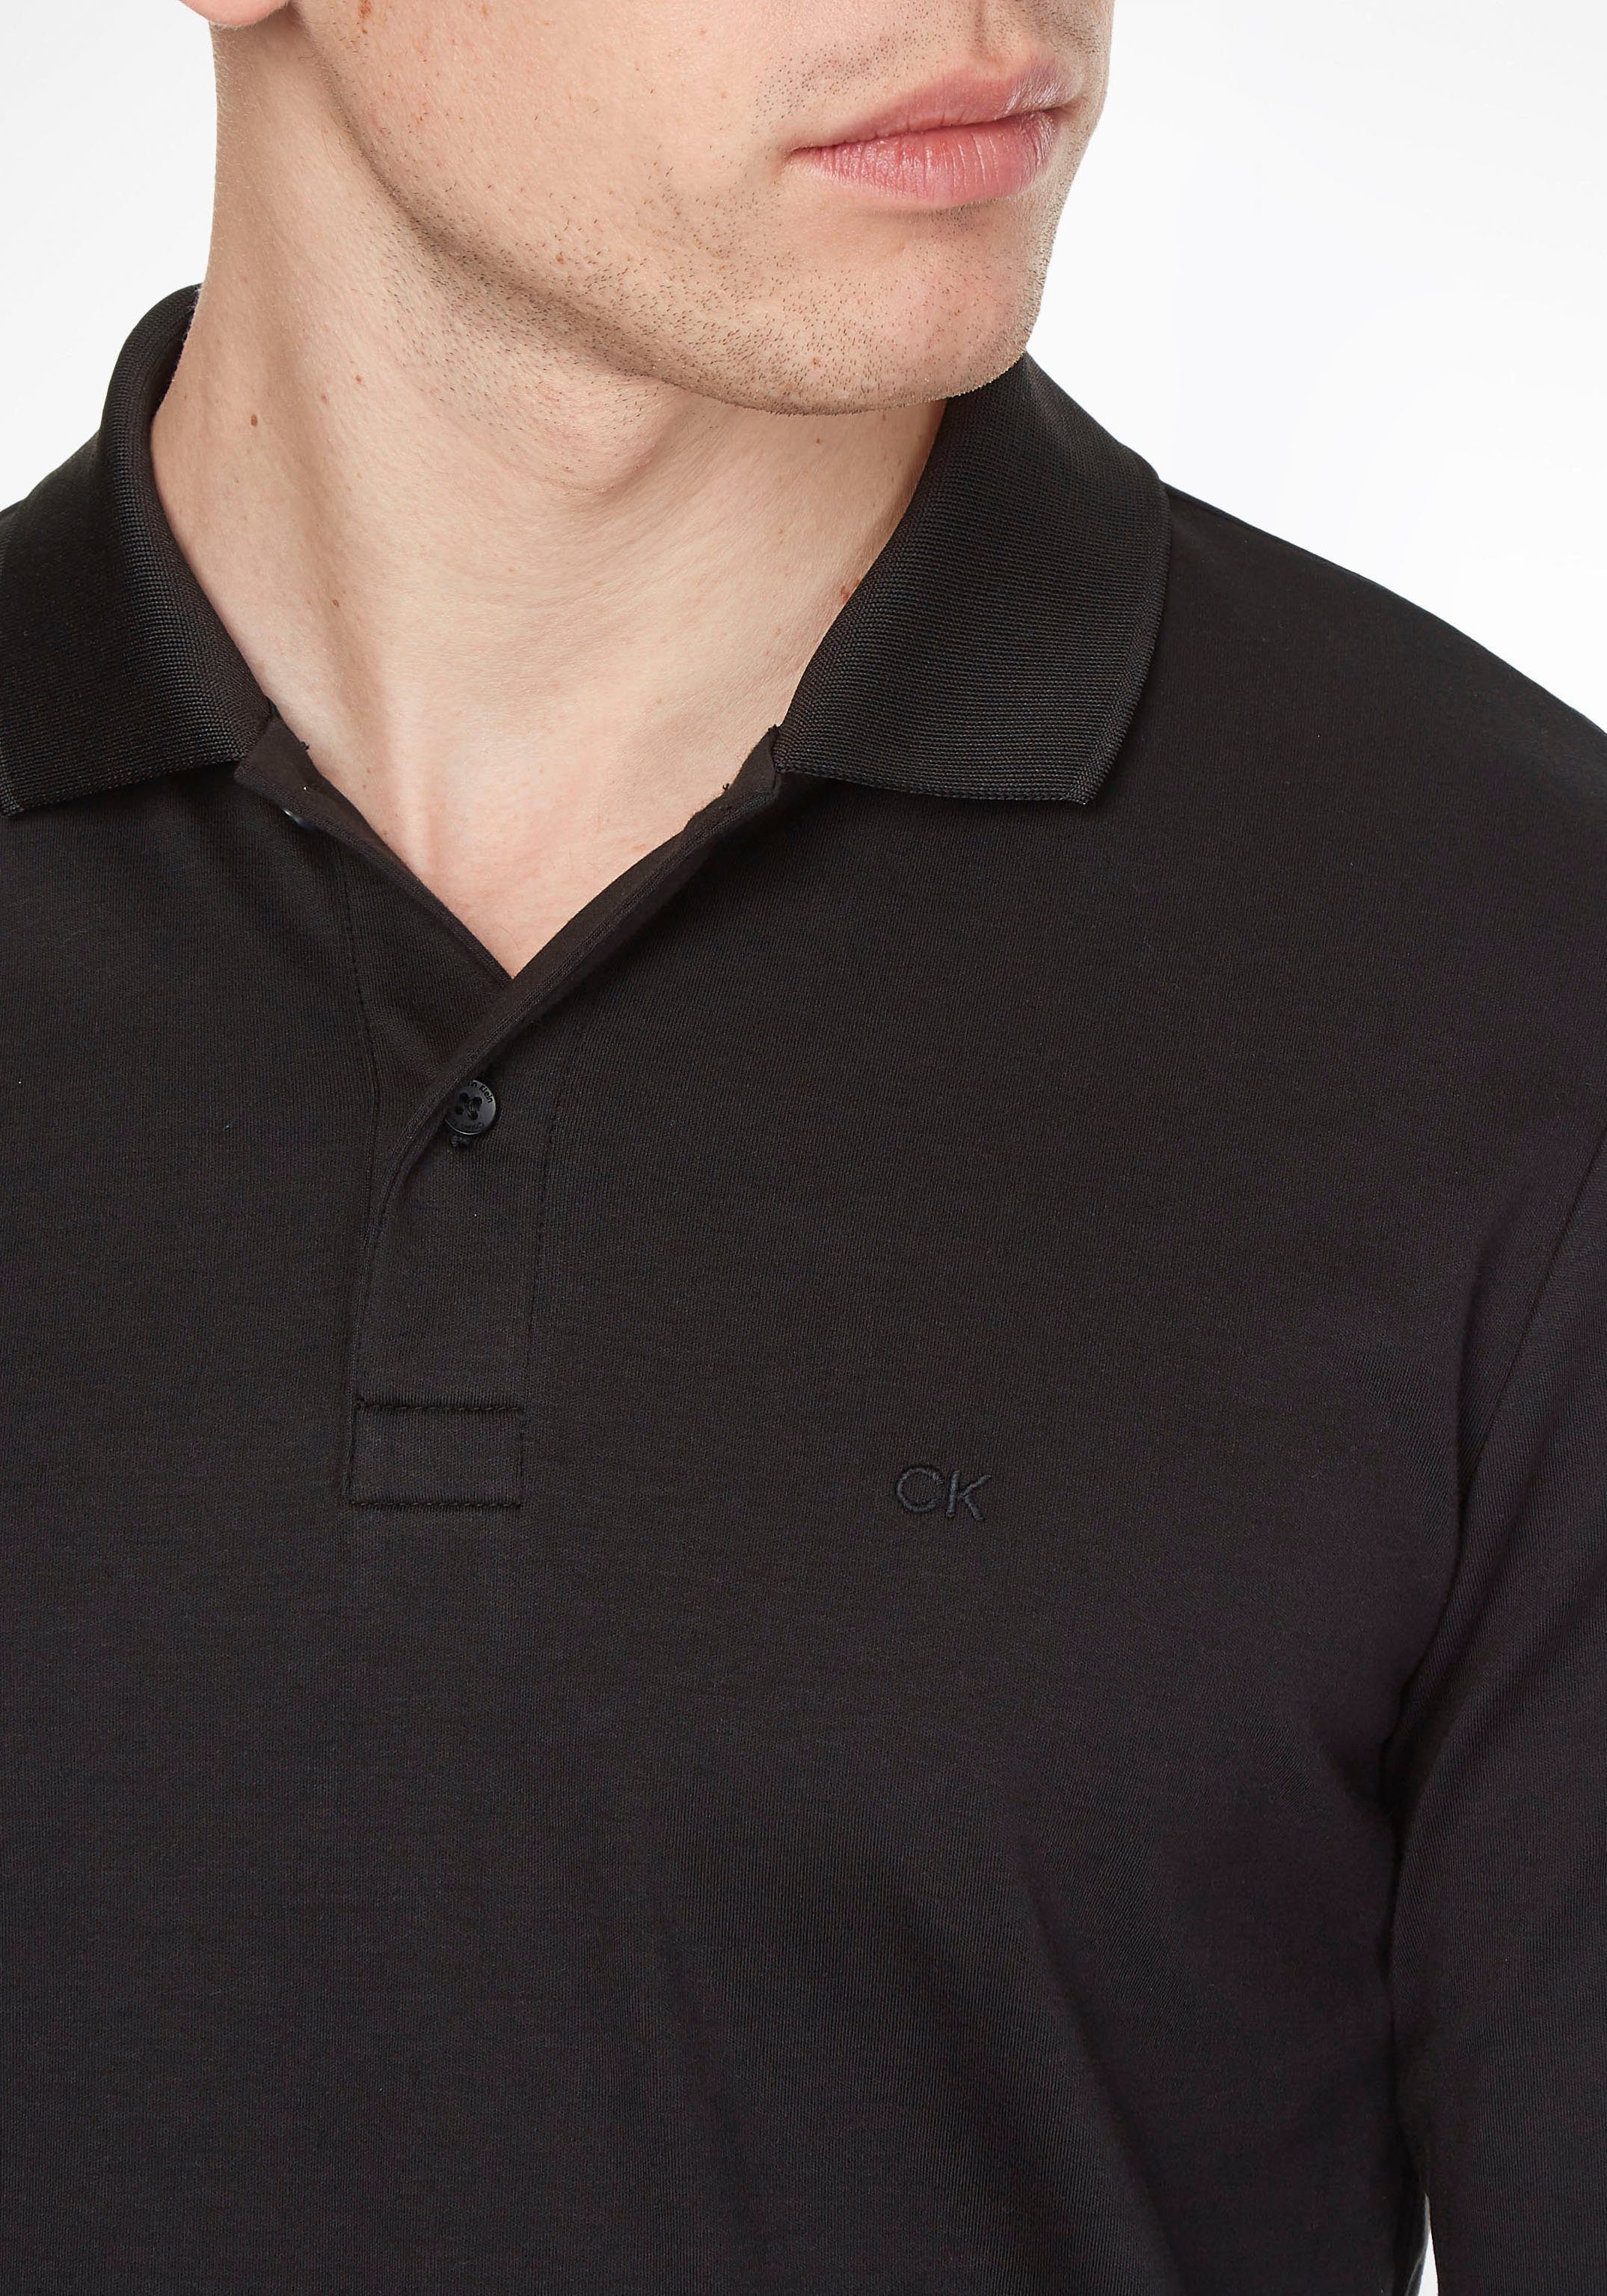 Klein Bündchen Calvin mit ck am black Ärmelabschluss Poloshirt